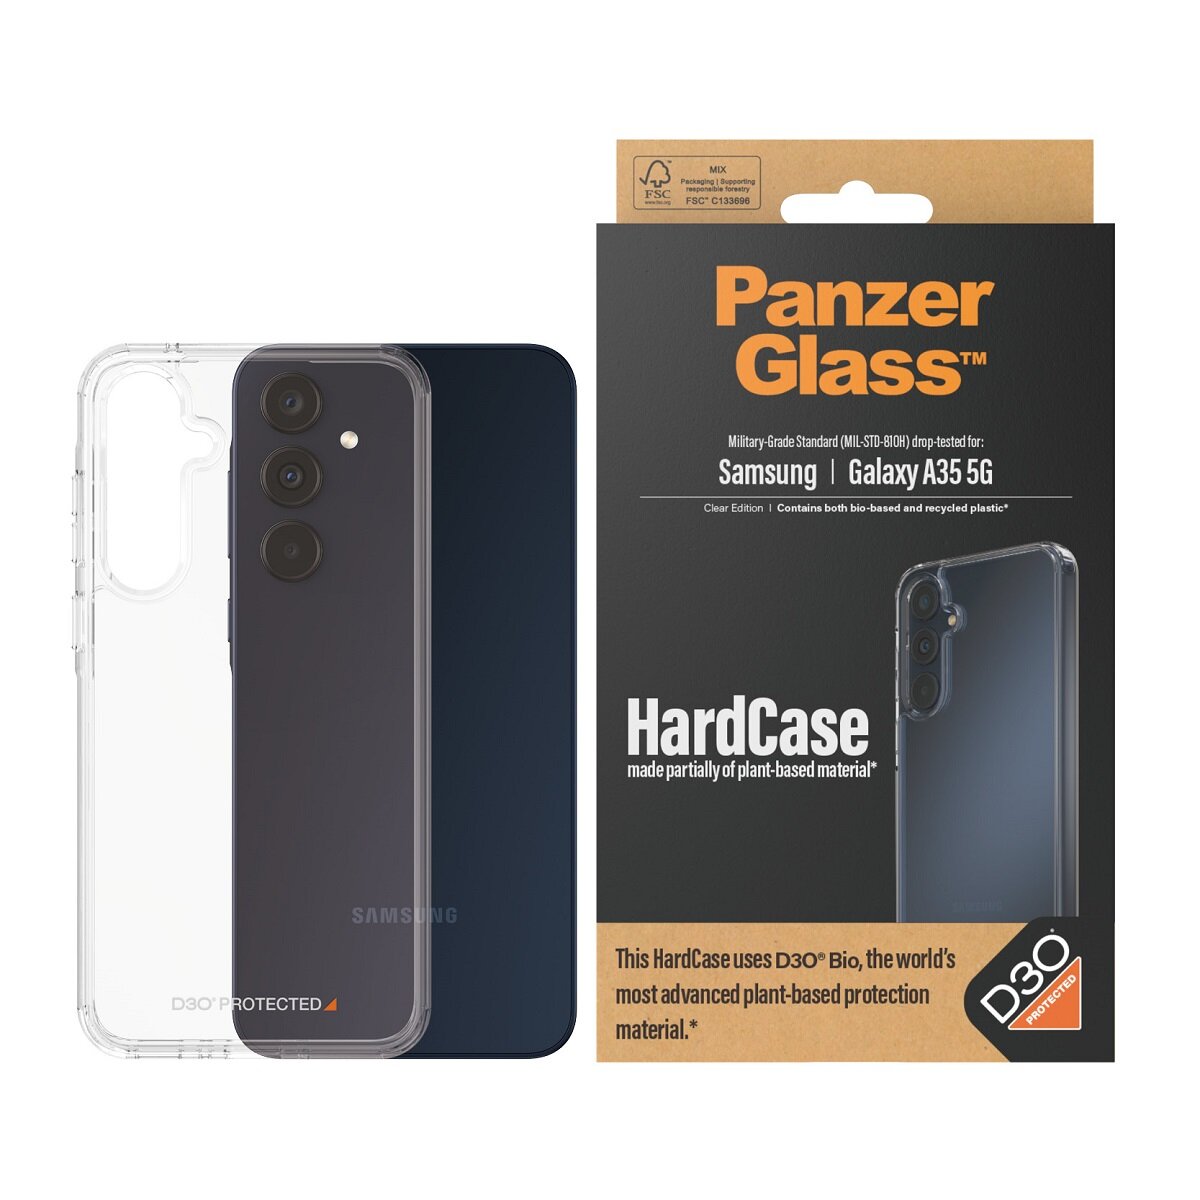 Etui PanzerGlass HardCase Galaxy A35 5G wraz z telefonem oraz opakowanie od frontu